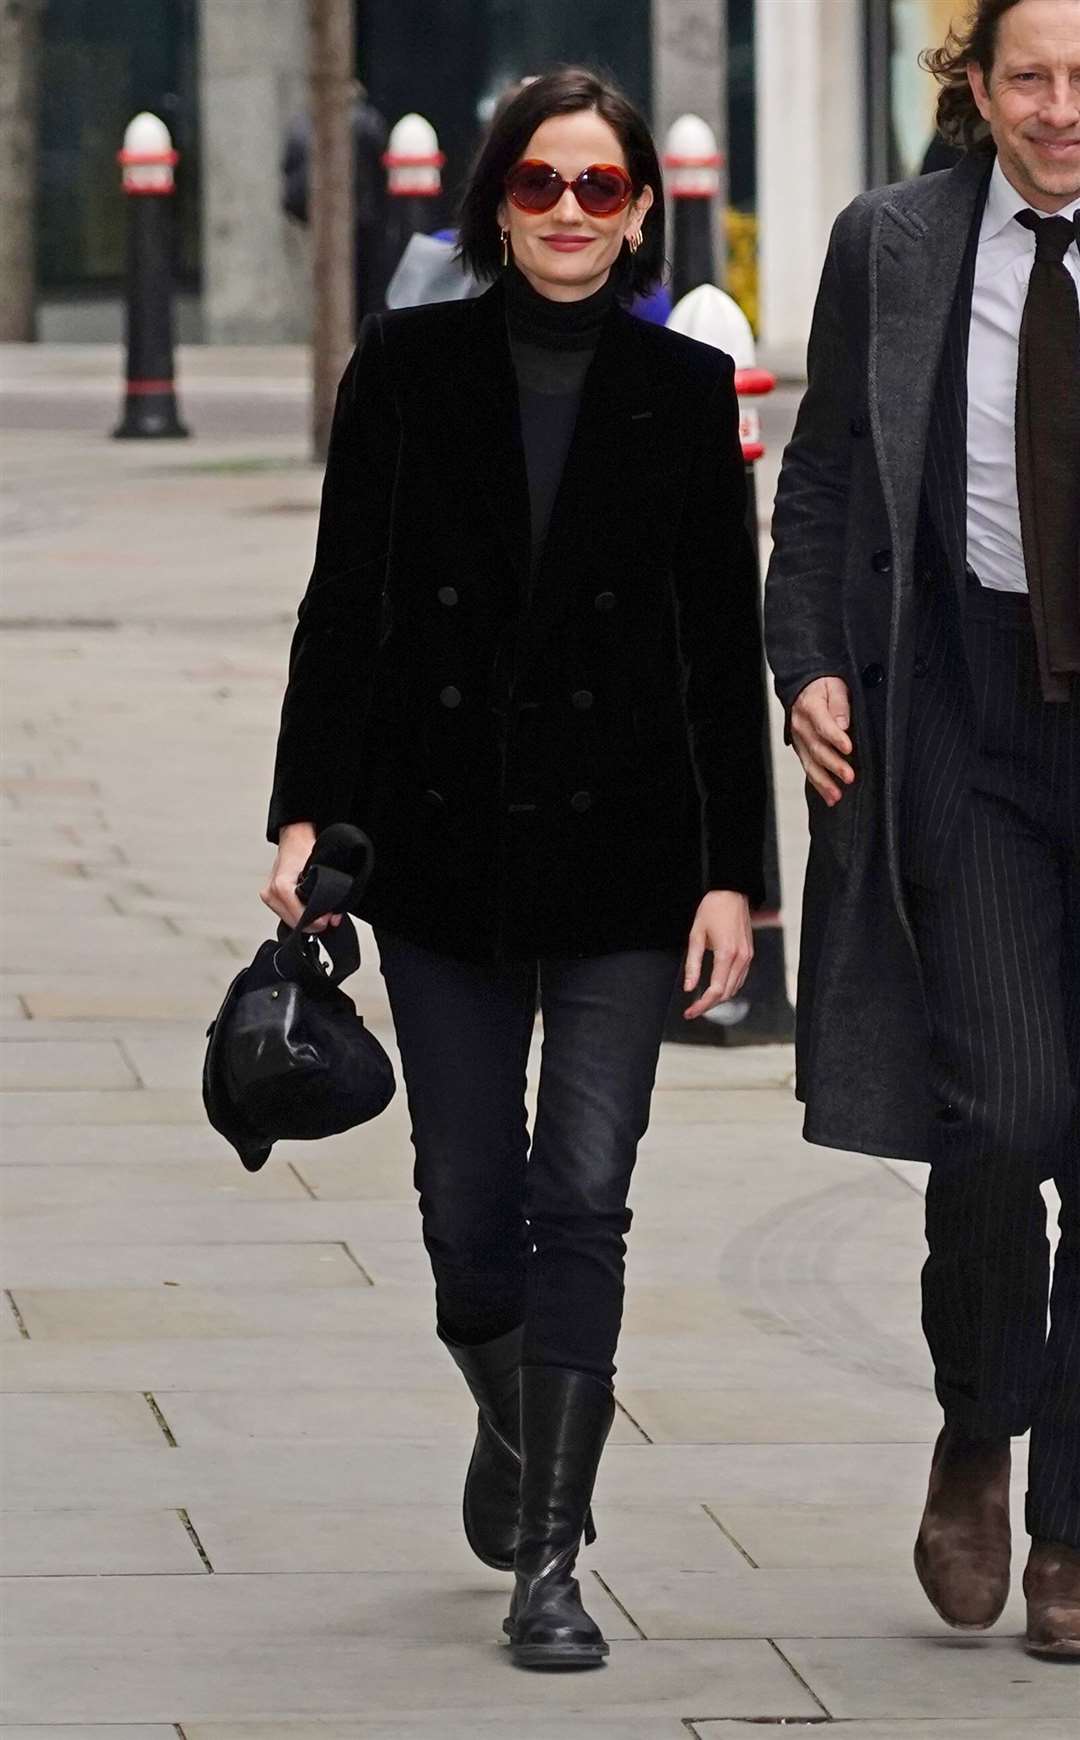 Eva Green arrives at the Rolls Building, London (Jordan Pettitt/PA)